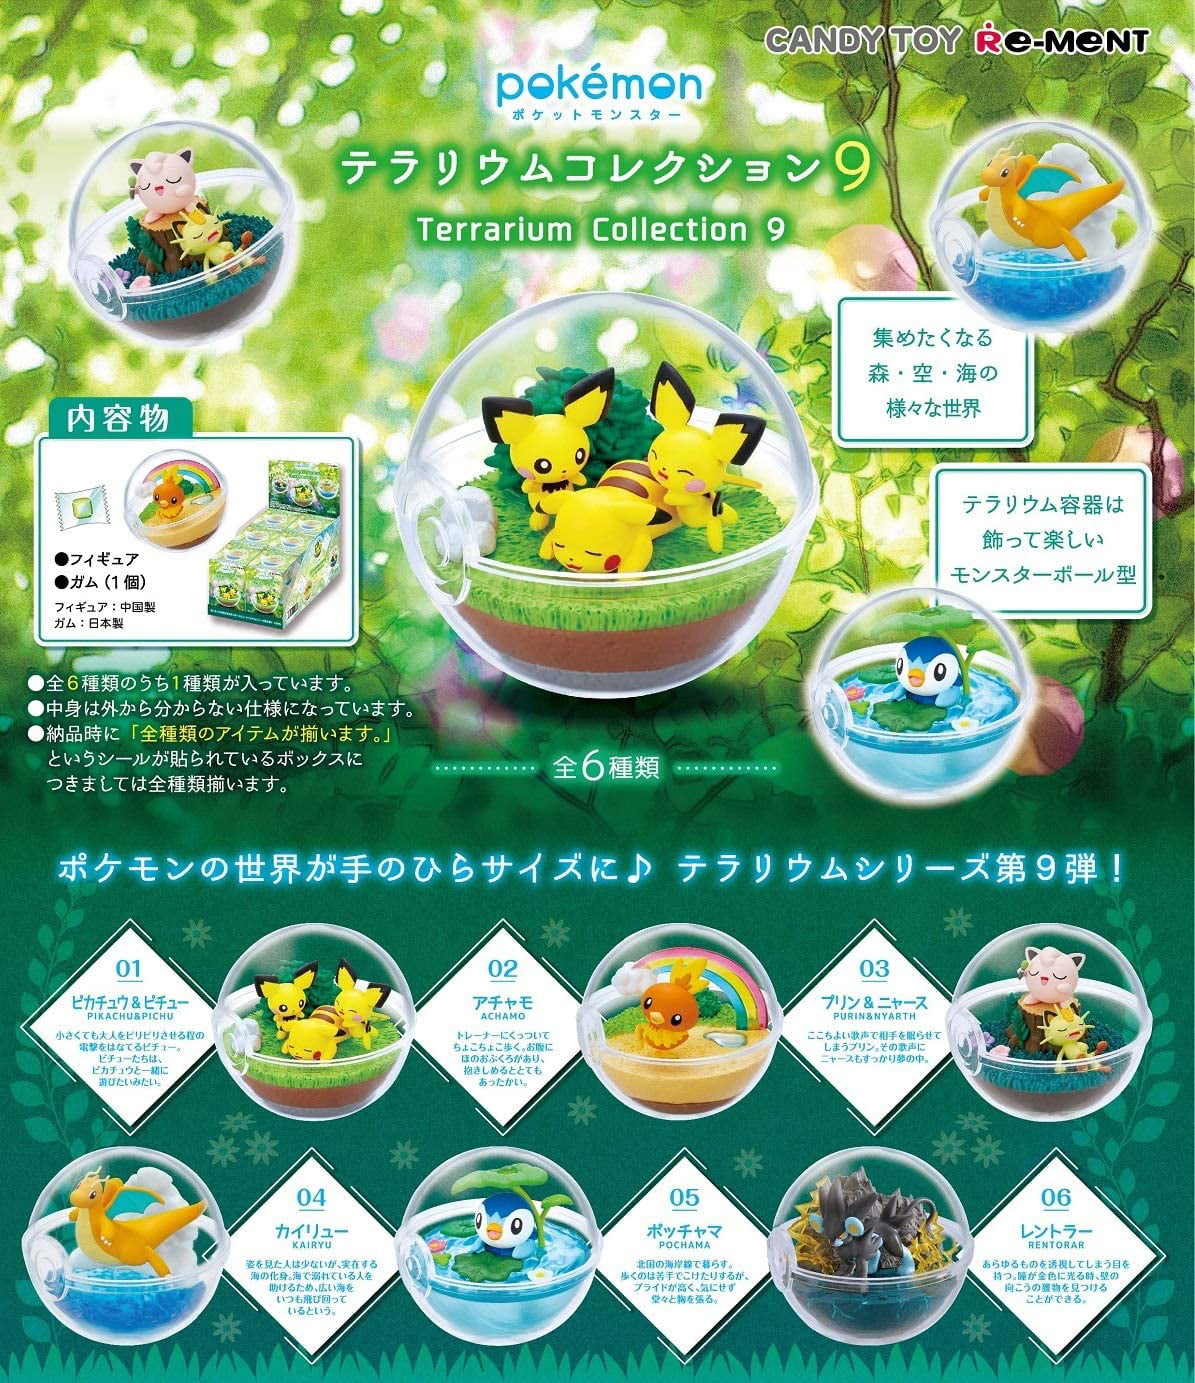 Re-ment Miniature Pokemon Pikachu terrarium collection part 7 Full Set 6 Pieces